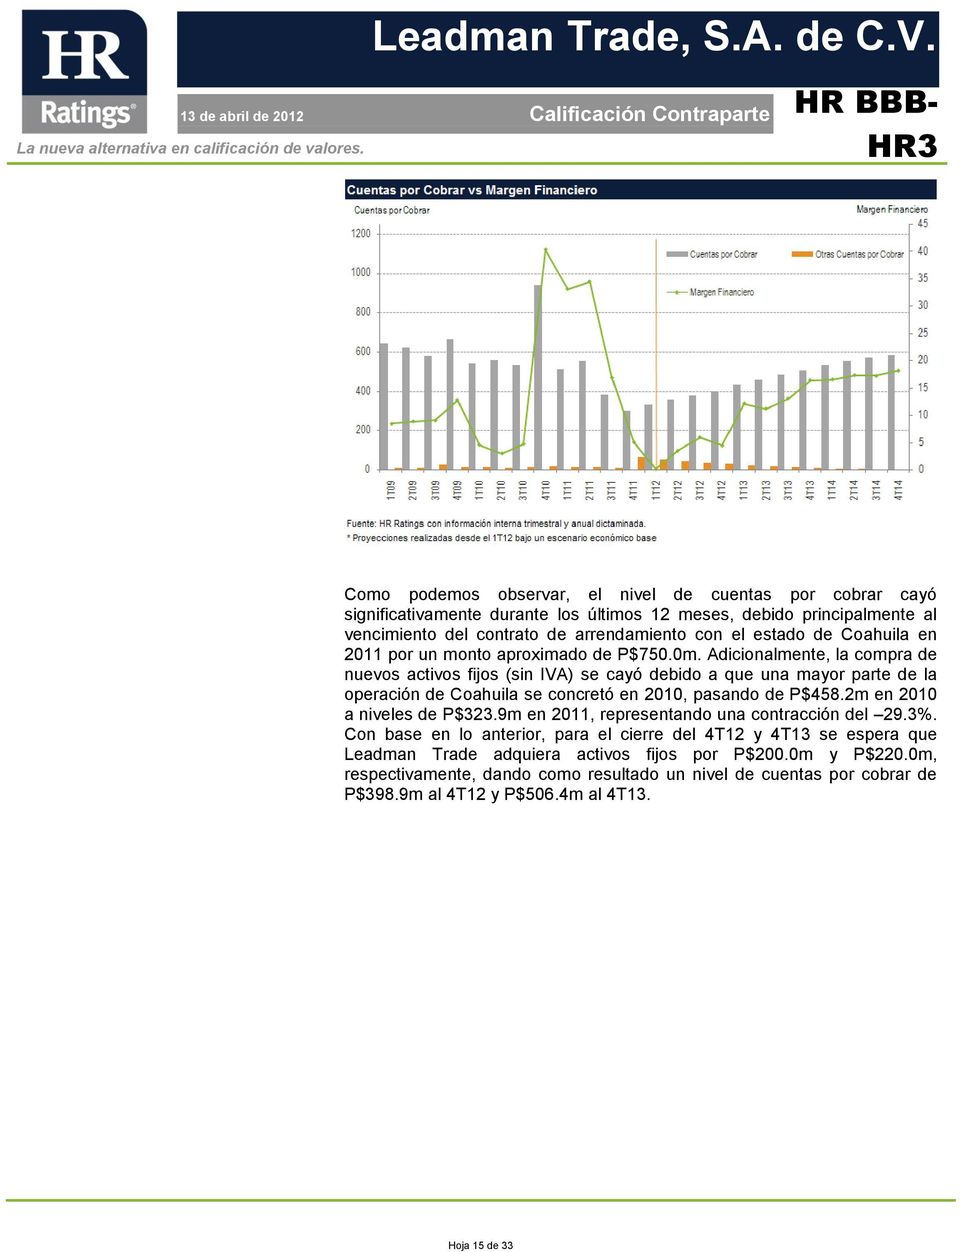 Adicionalmente, la compra de nuevos activos fijos (sin IVA) se cayó debido a que una mayor parte de la operación de Coahuila se concretó en 2010, pasando de P$458.